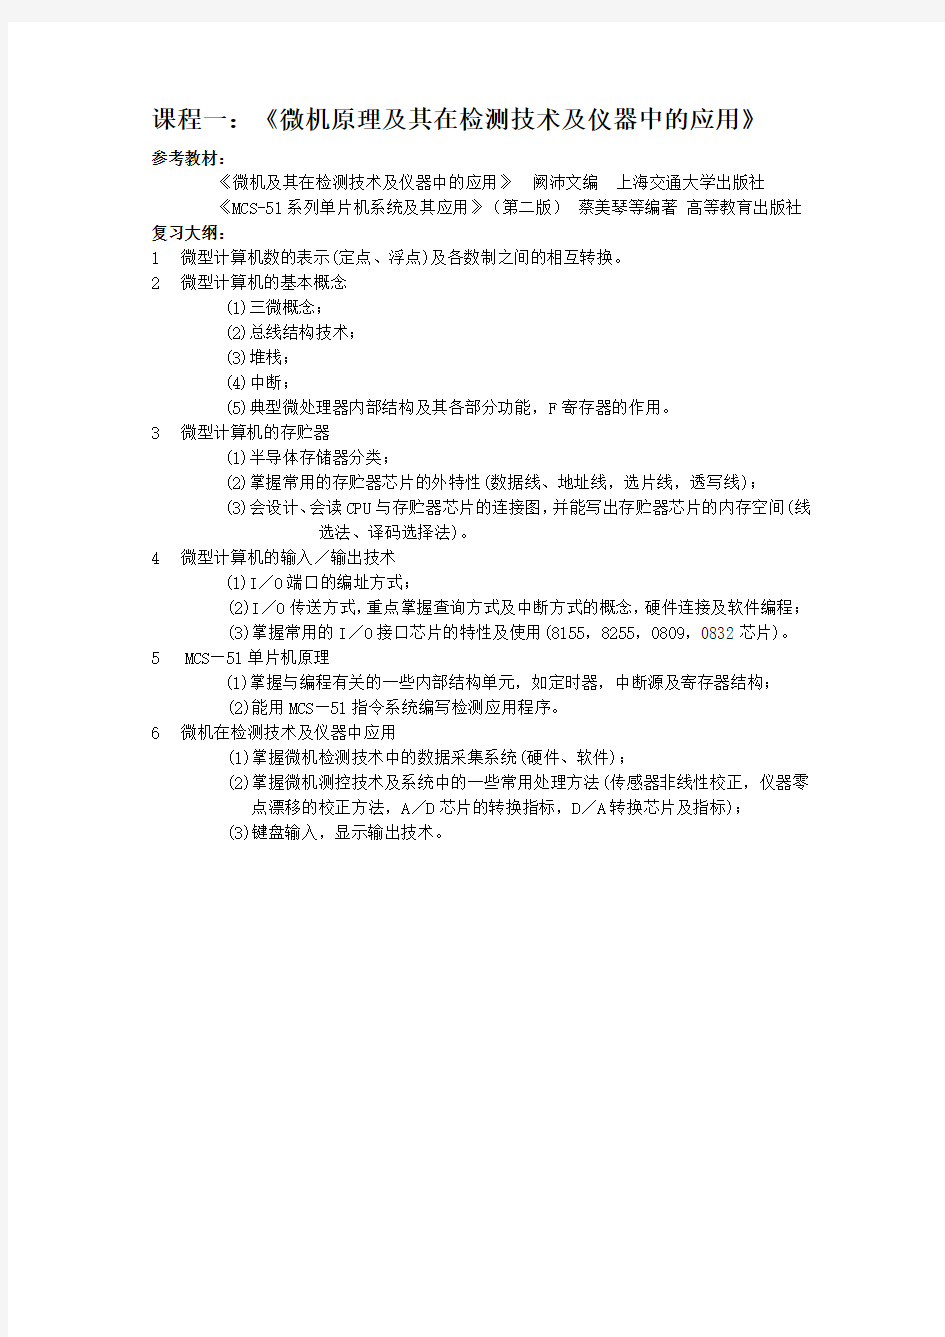 上海交通大学 仪器科学与技术 复试笔试考纲及2005年真题